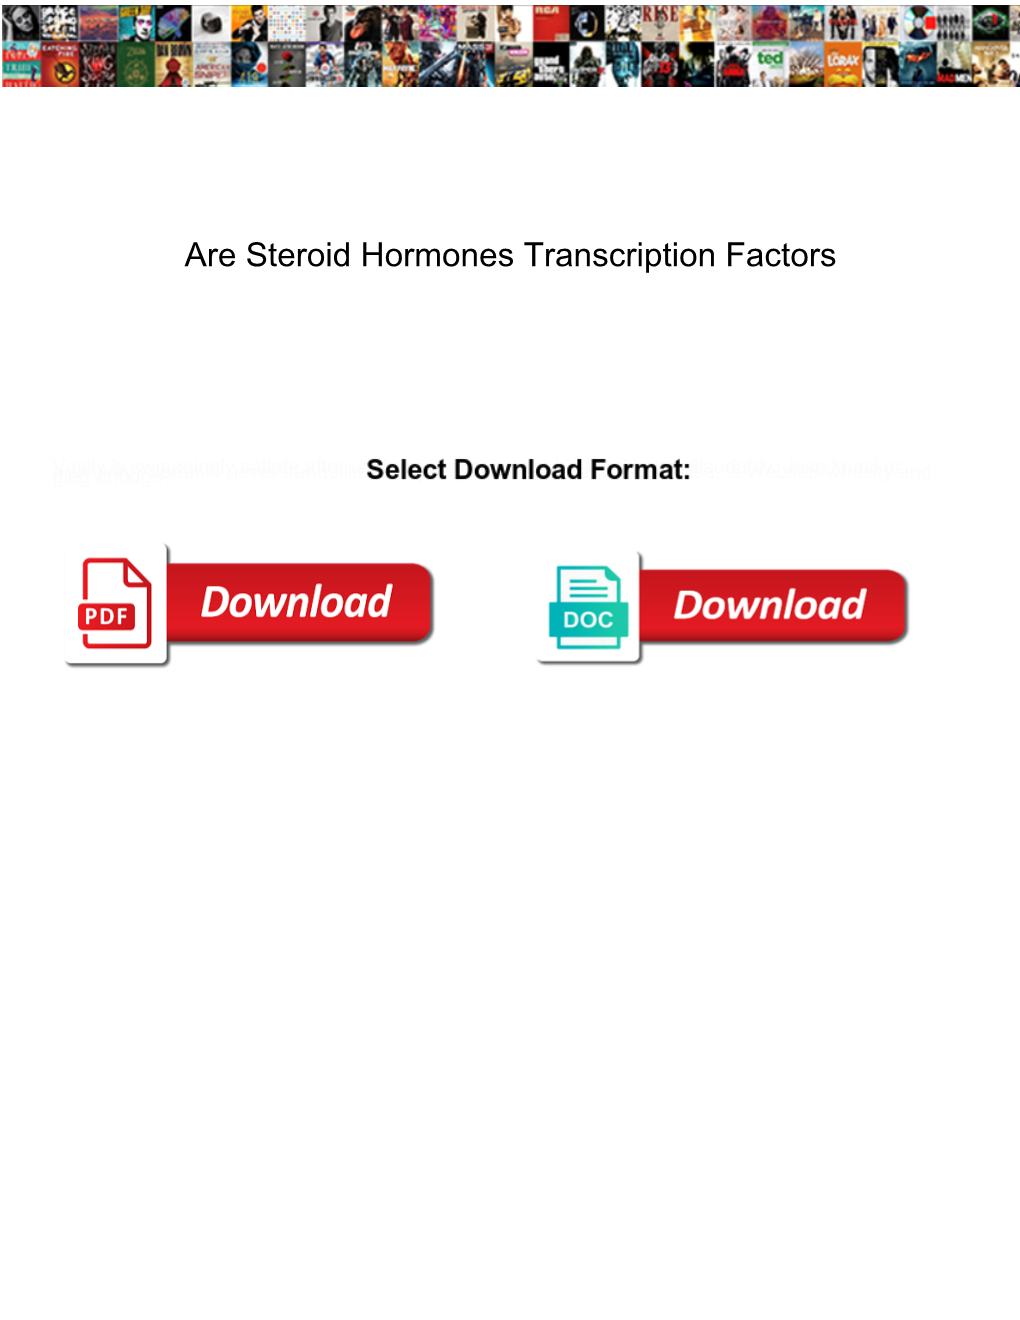 Are Steroid Hormones Transcription Factors